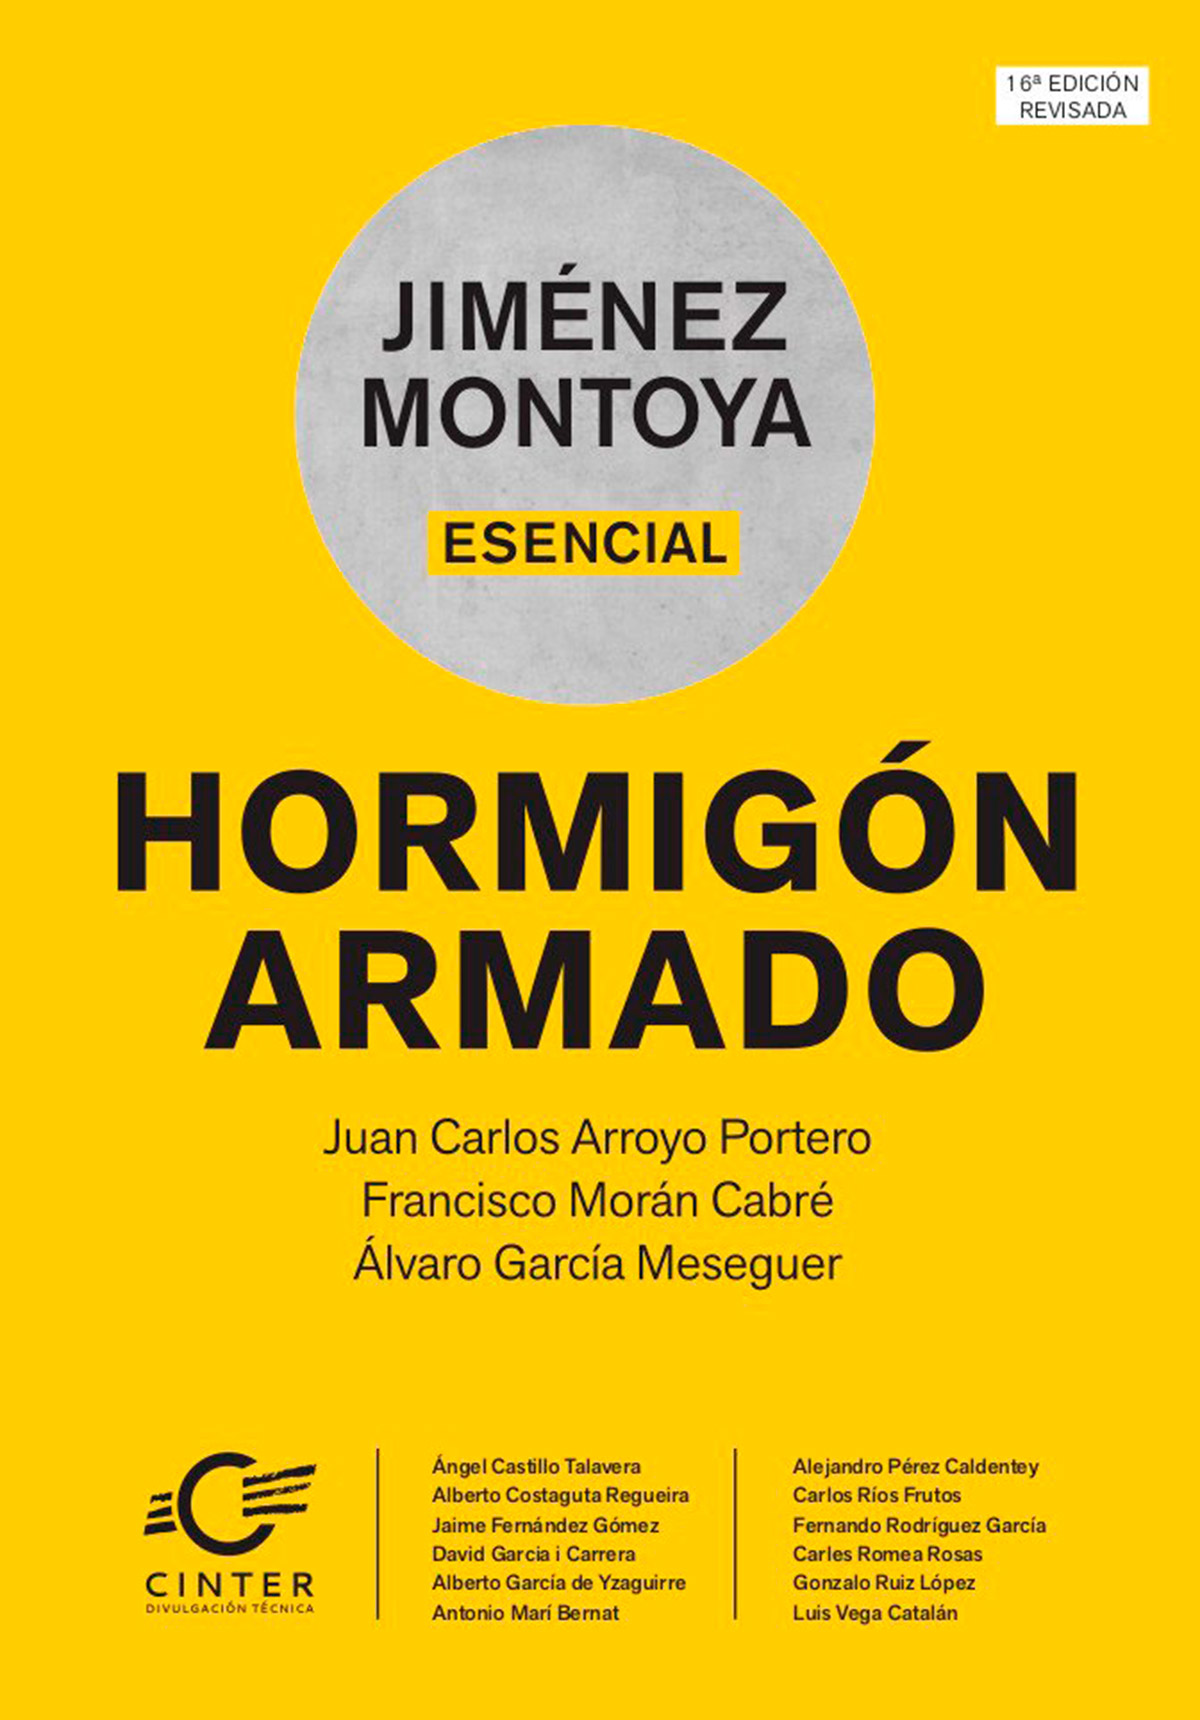 Jiménez Montoya Esencial. Hormigón Armado